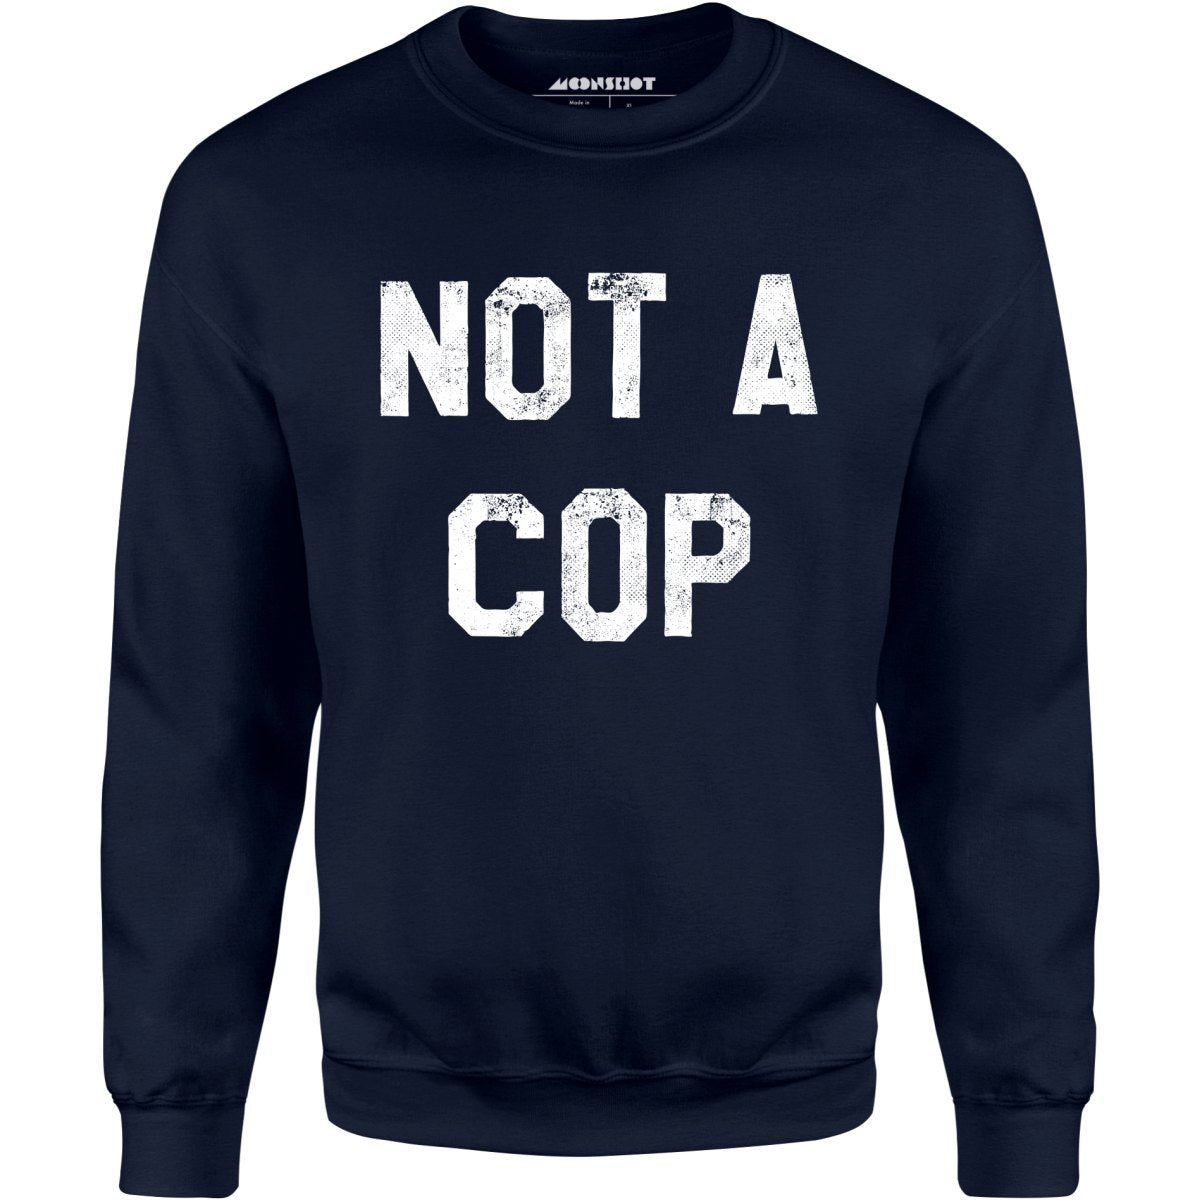 Not a Cop - Unisex Sweatshirt